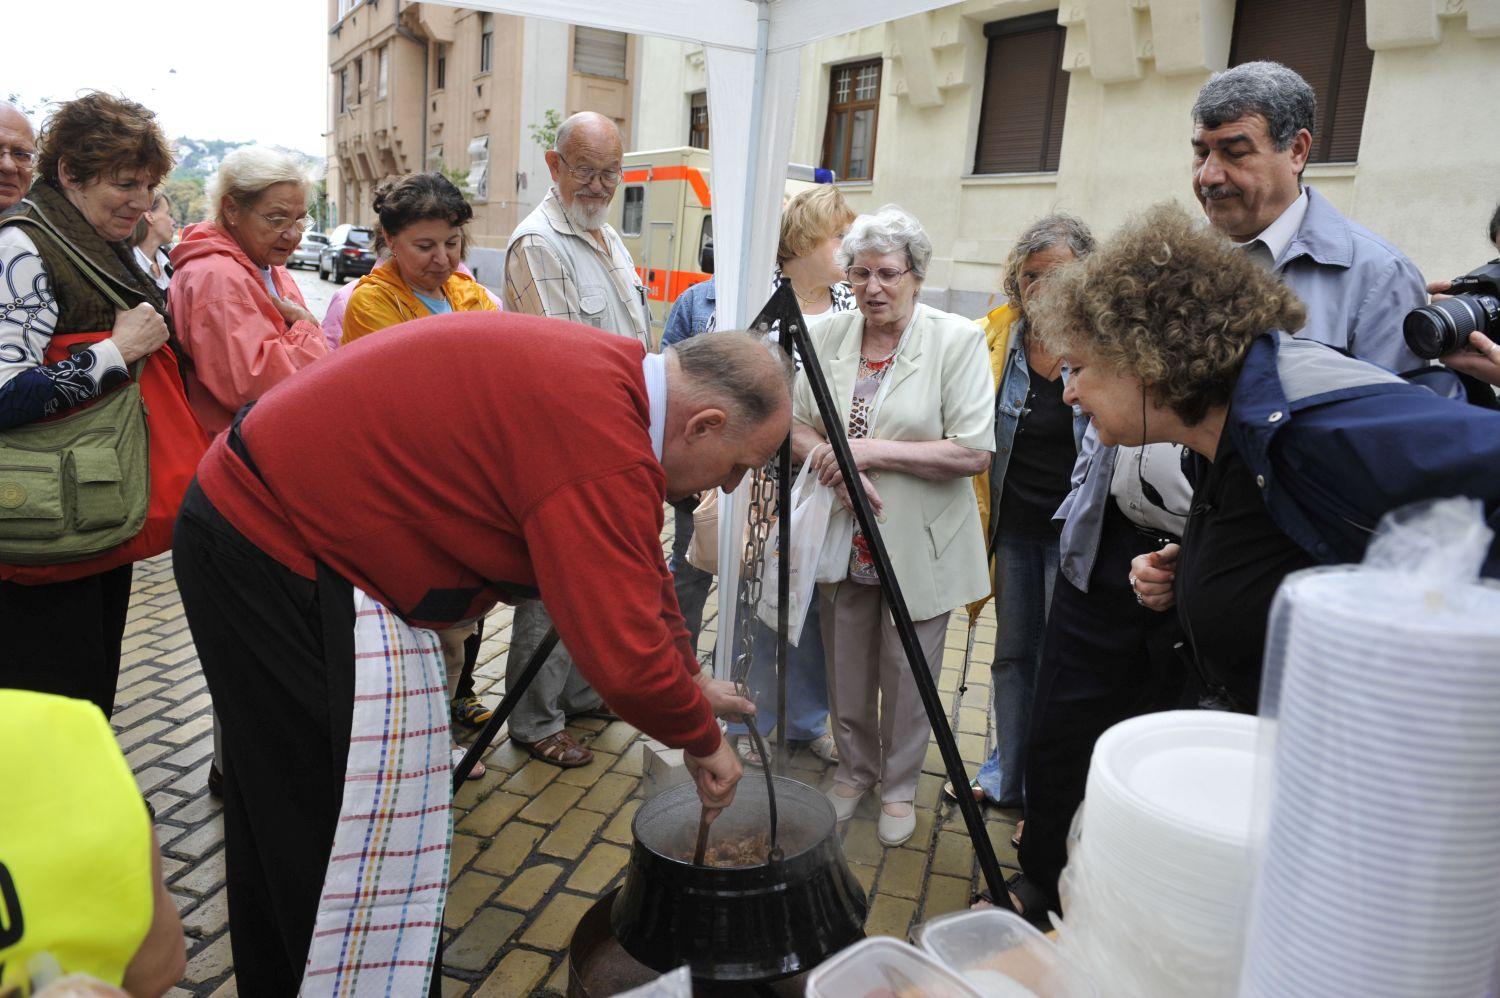 Tóth József főz a kerületében megrendezett Pozsinyi pikniken